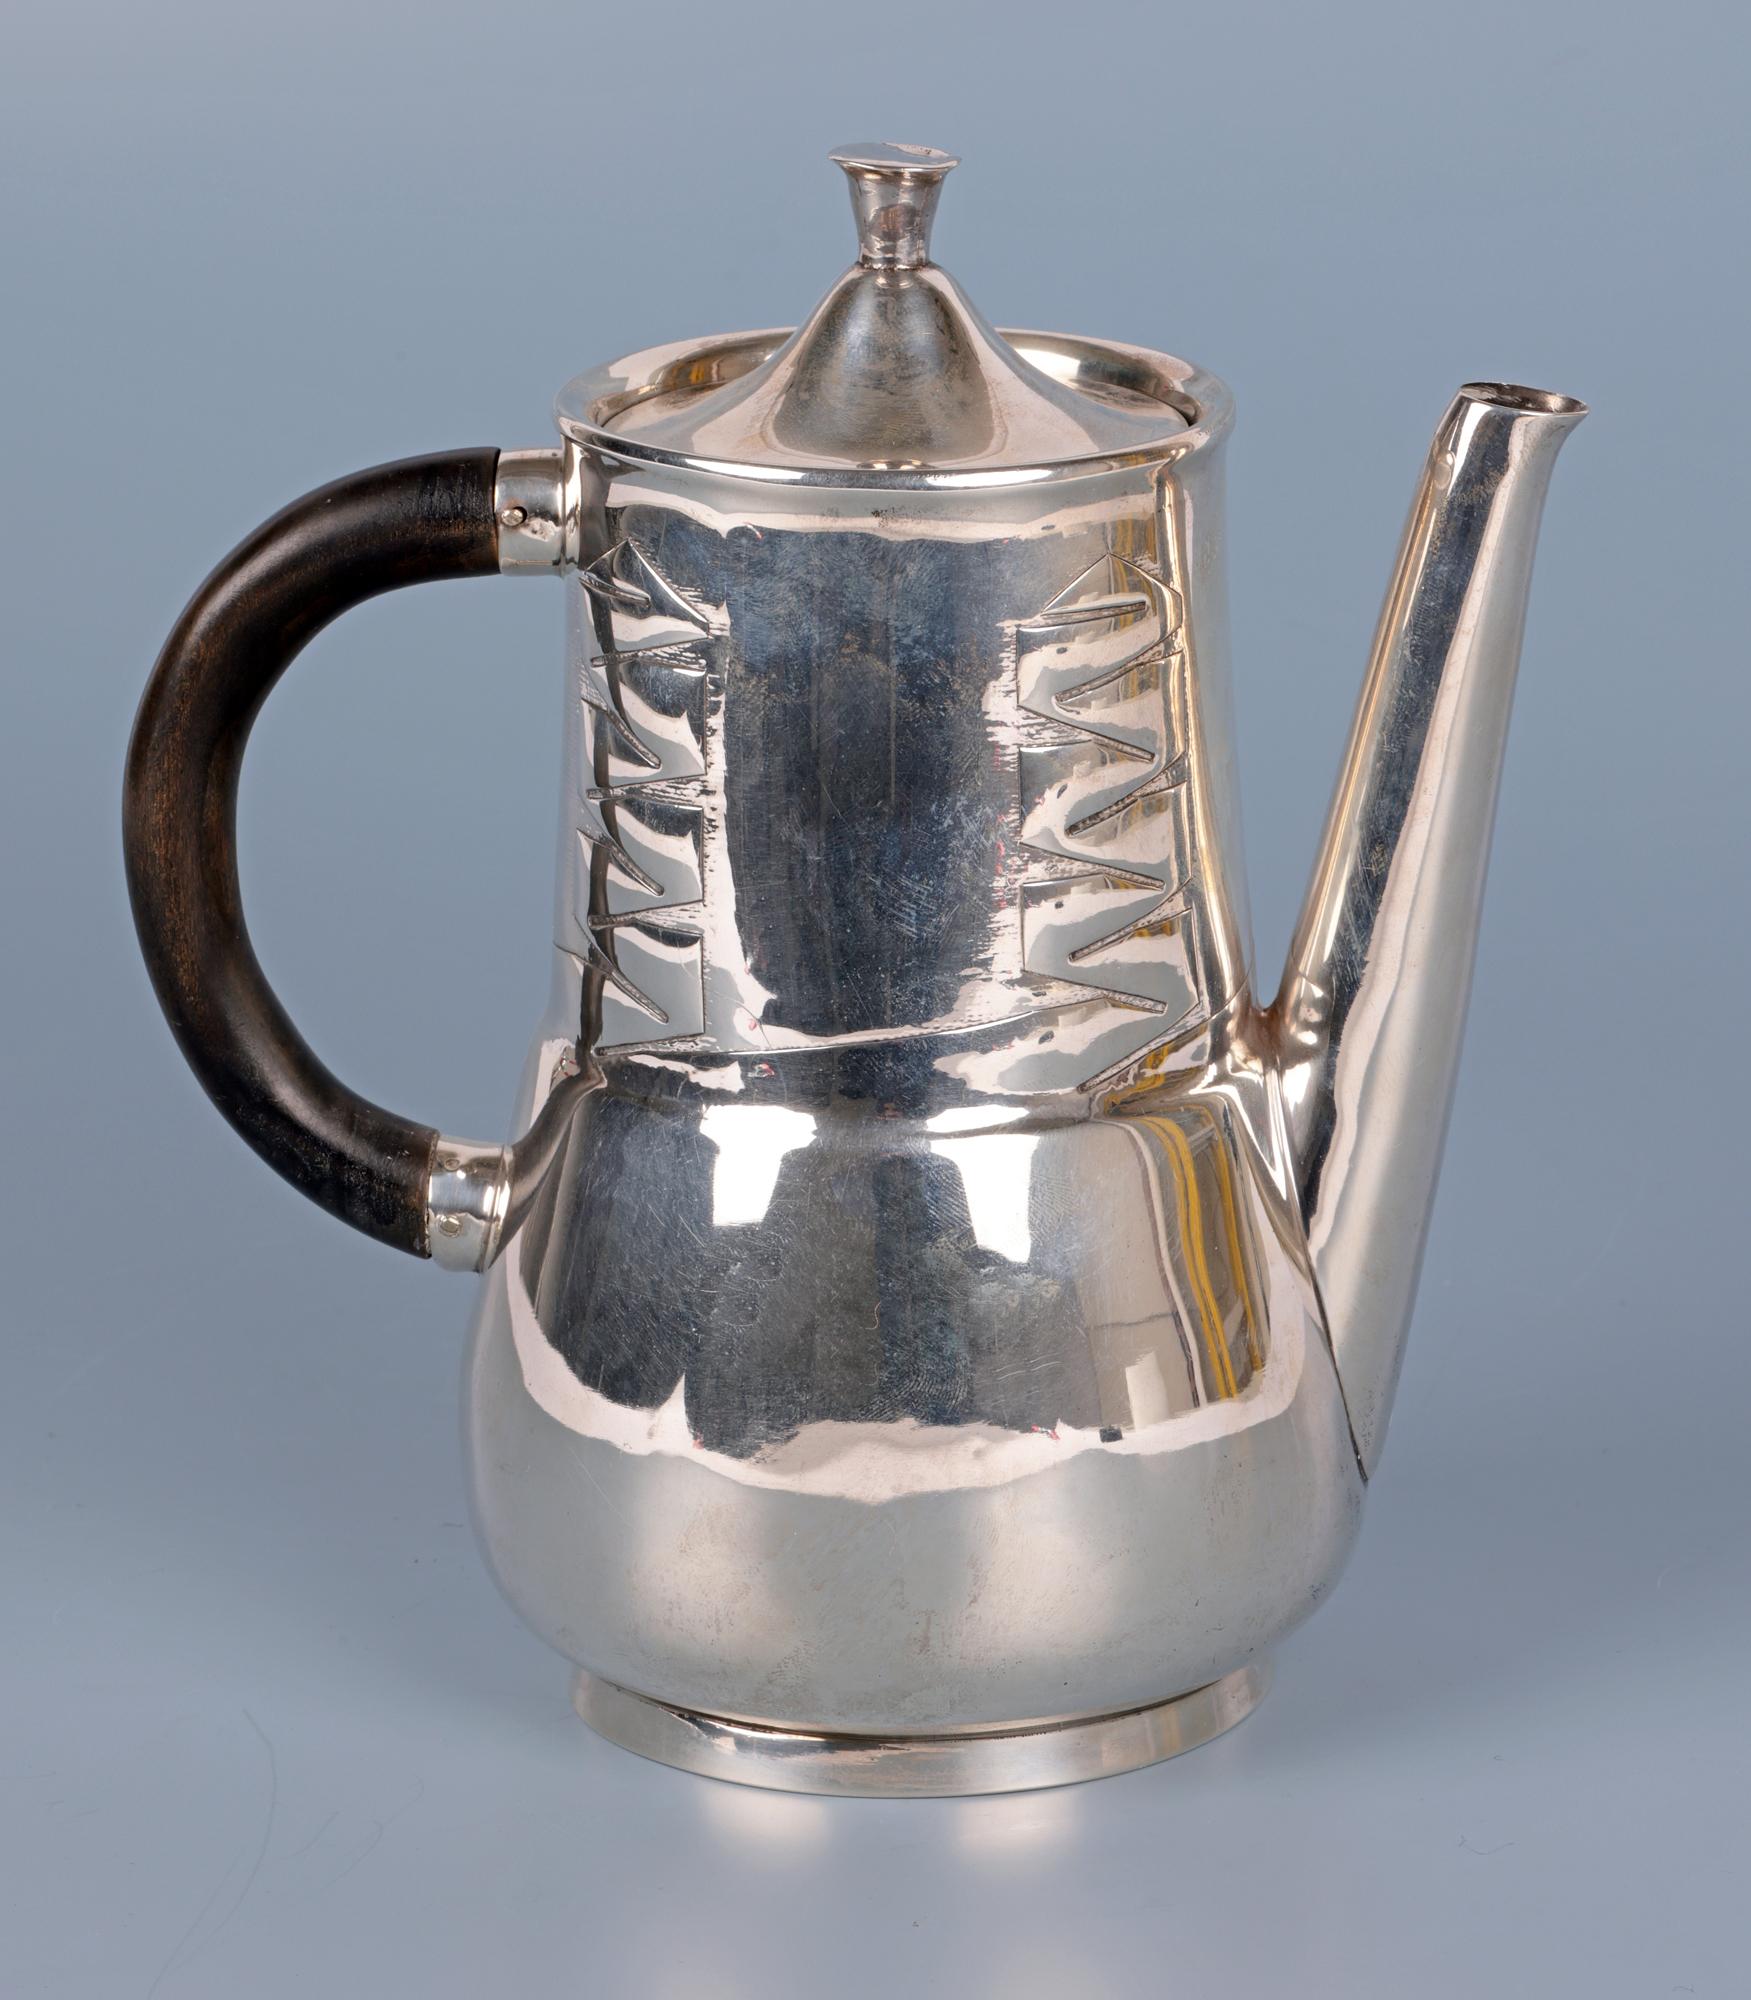  Archibald Knox Liberty & Co Silver Art Nouveau Silver Teapot For Sale 10